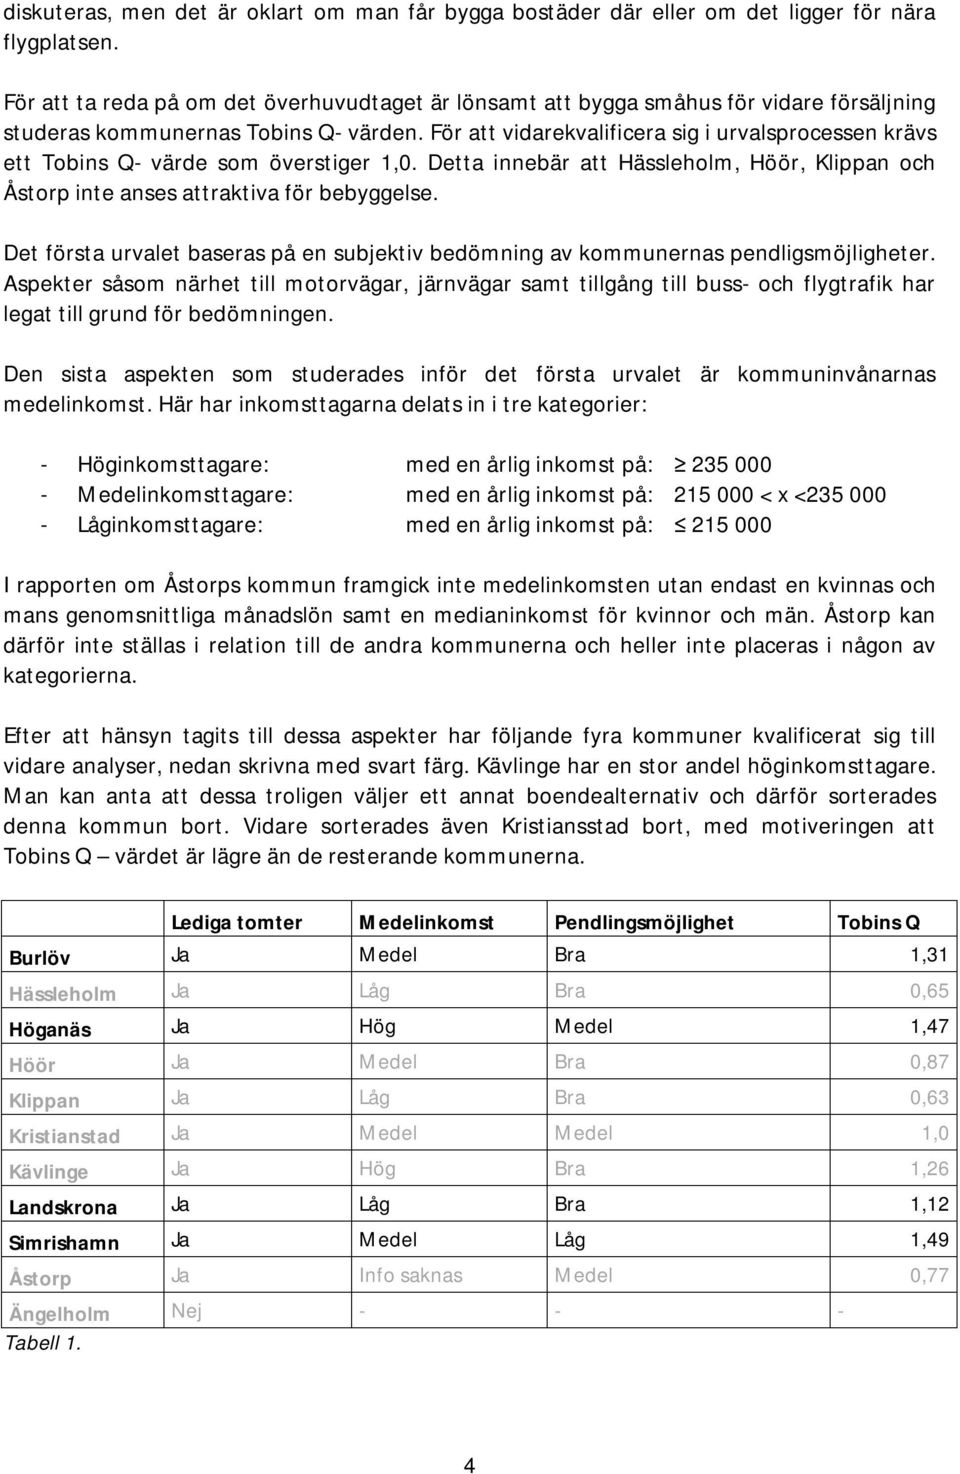 För att vidarekvalificera sig i urvalsprocessen krävs ett Tobins Q- värde som överstiger 1,0. Detta innebär att Hässleholm, Höör, Klippan och Åstorp inte anses attraktiva för bebyggelse.